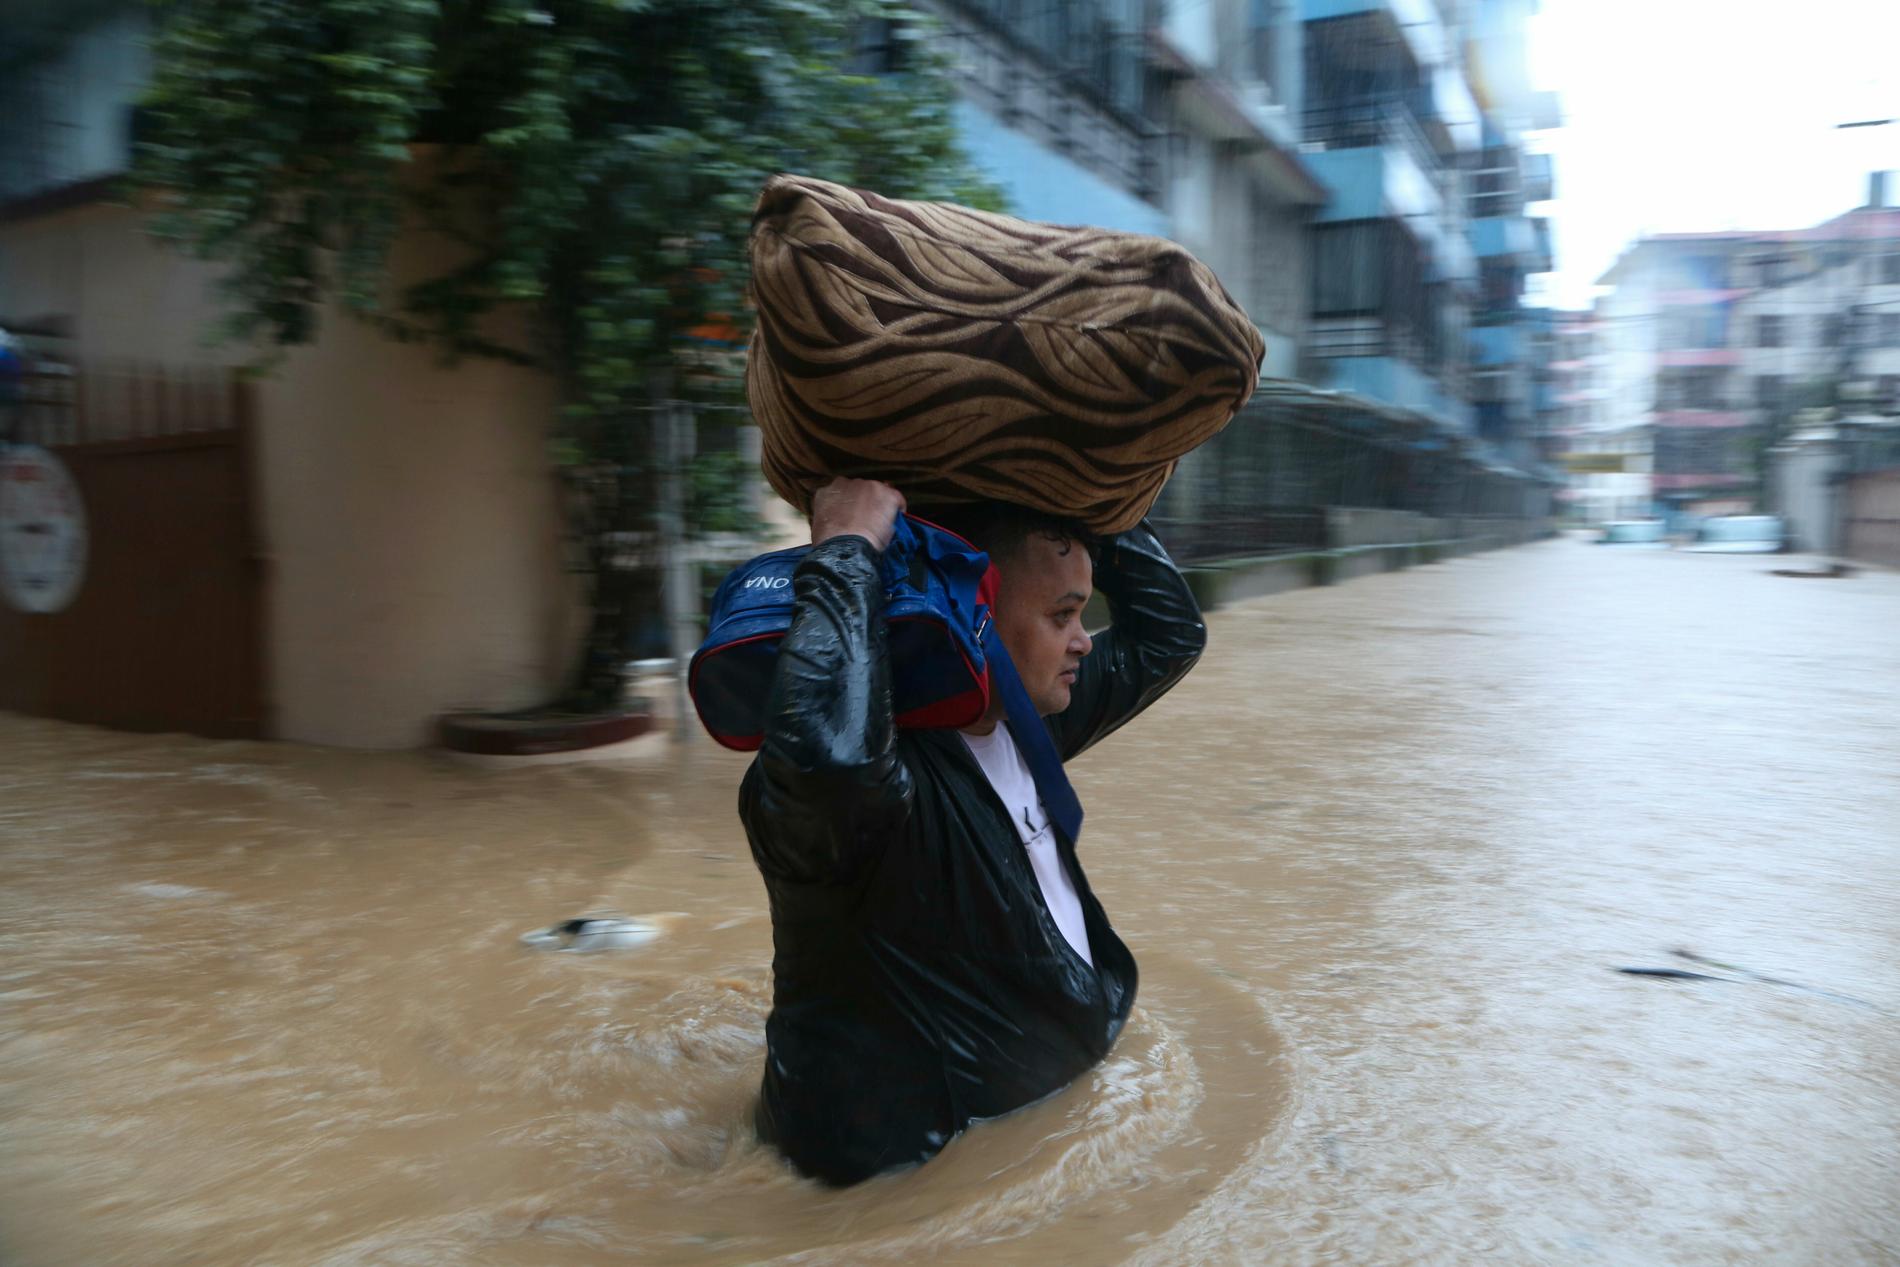 En nepalesisk man i fredags, då han vadade på en översvämmad gata i Katmandu med sina tillhörigheter.